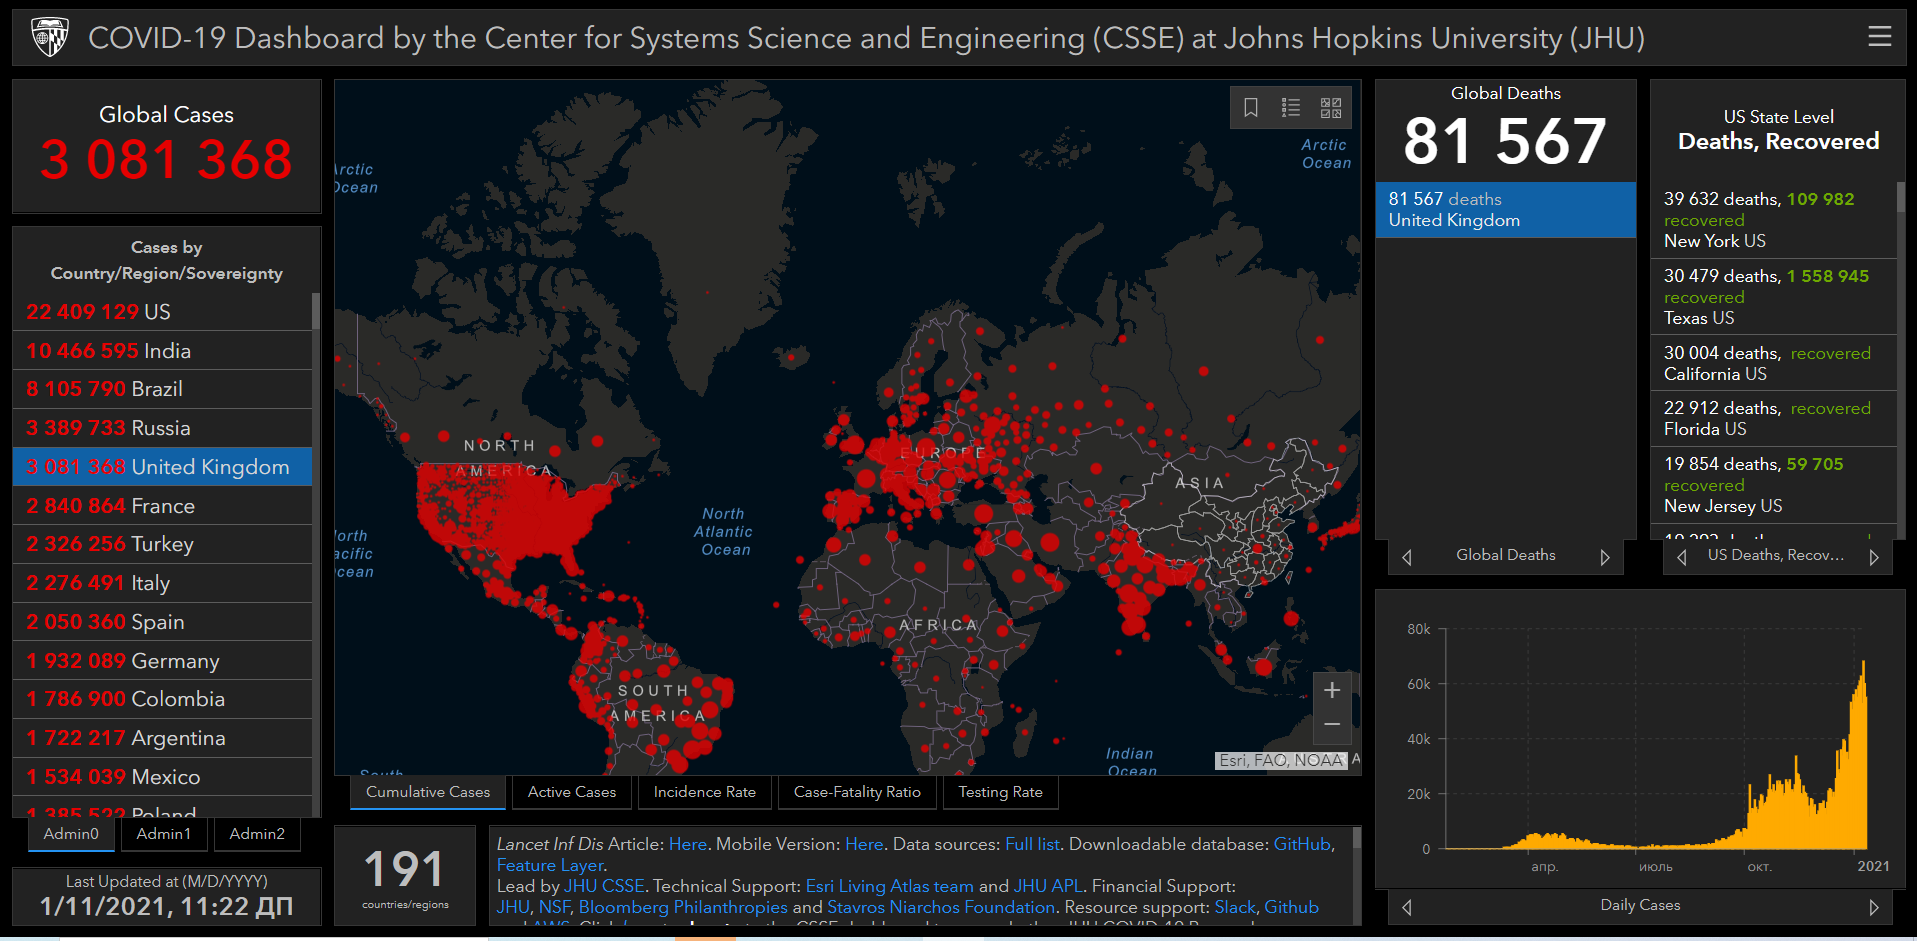 Карта распространения коронавируса в мире